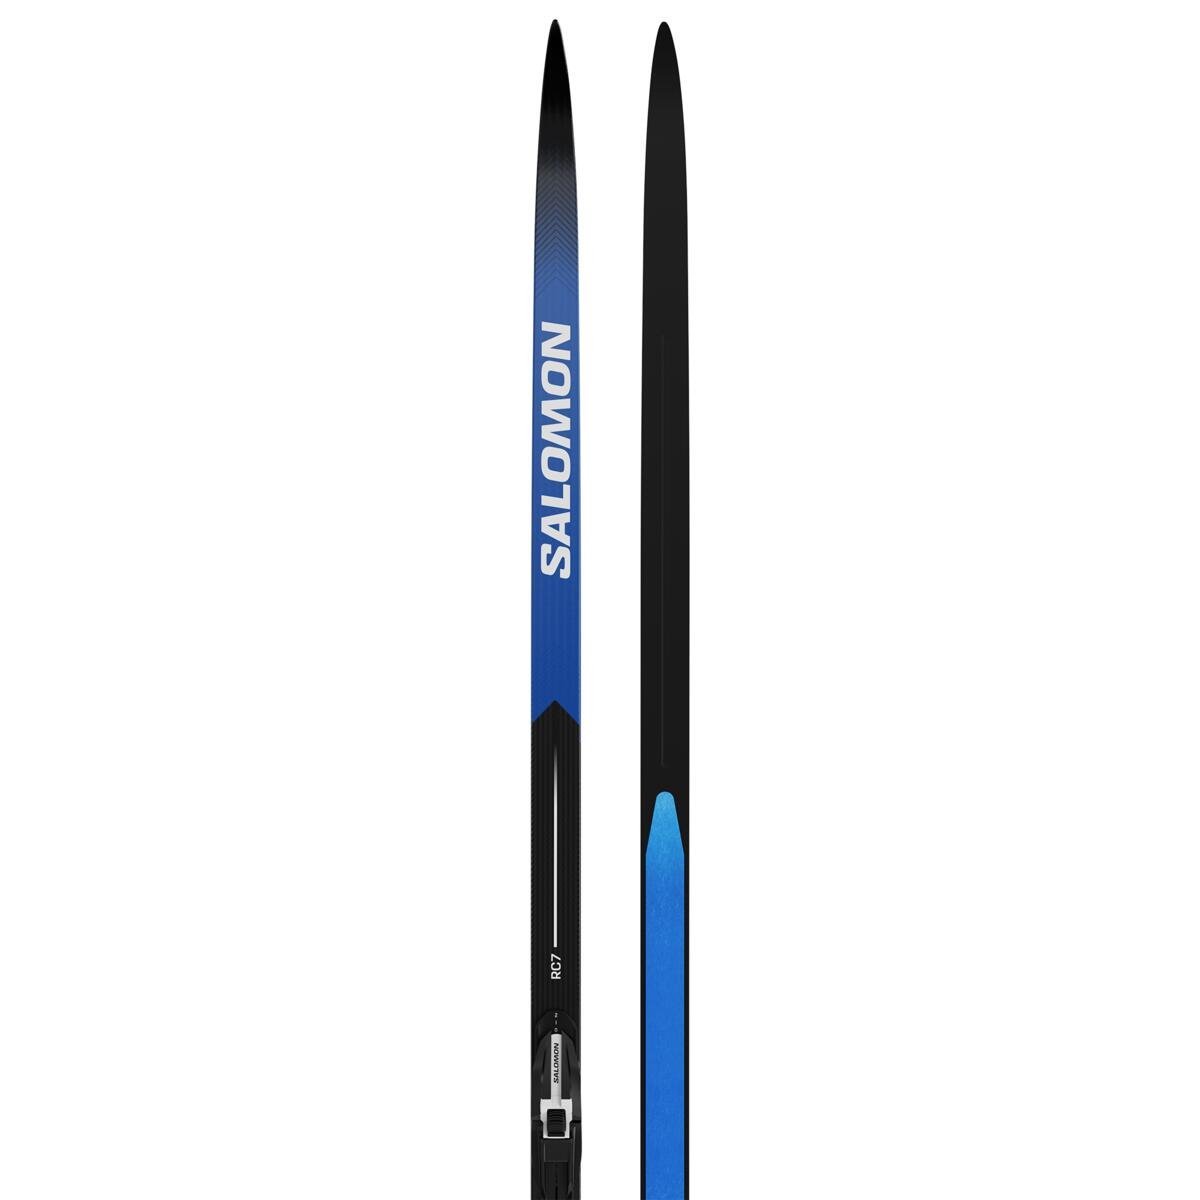 Salomon RC7 bežecké lyže + viazanie Shift BDG - Black/Blue